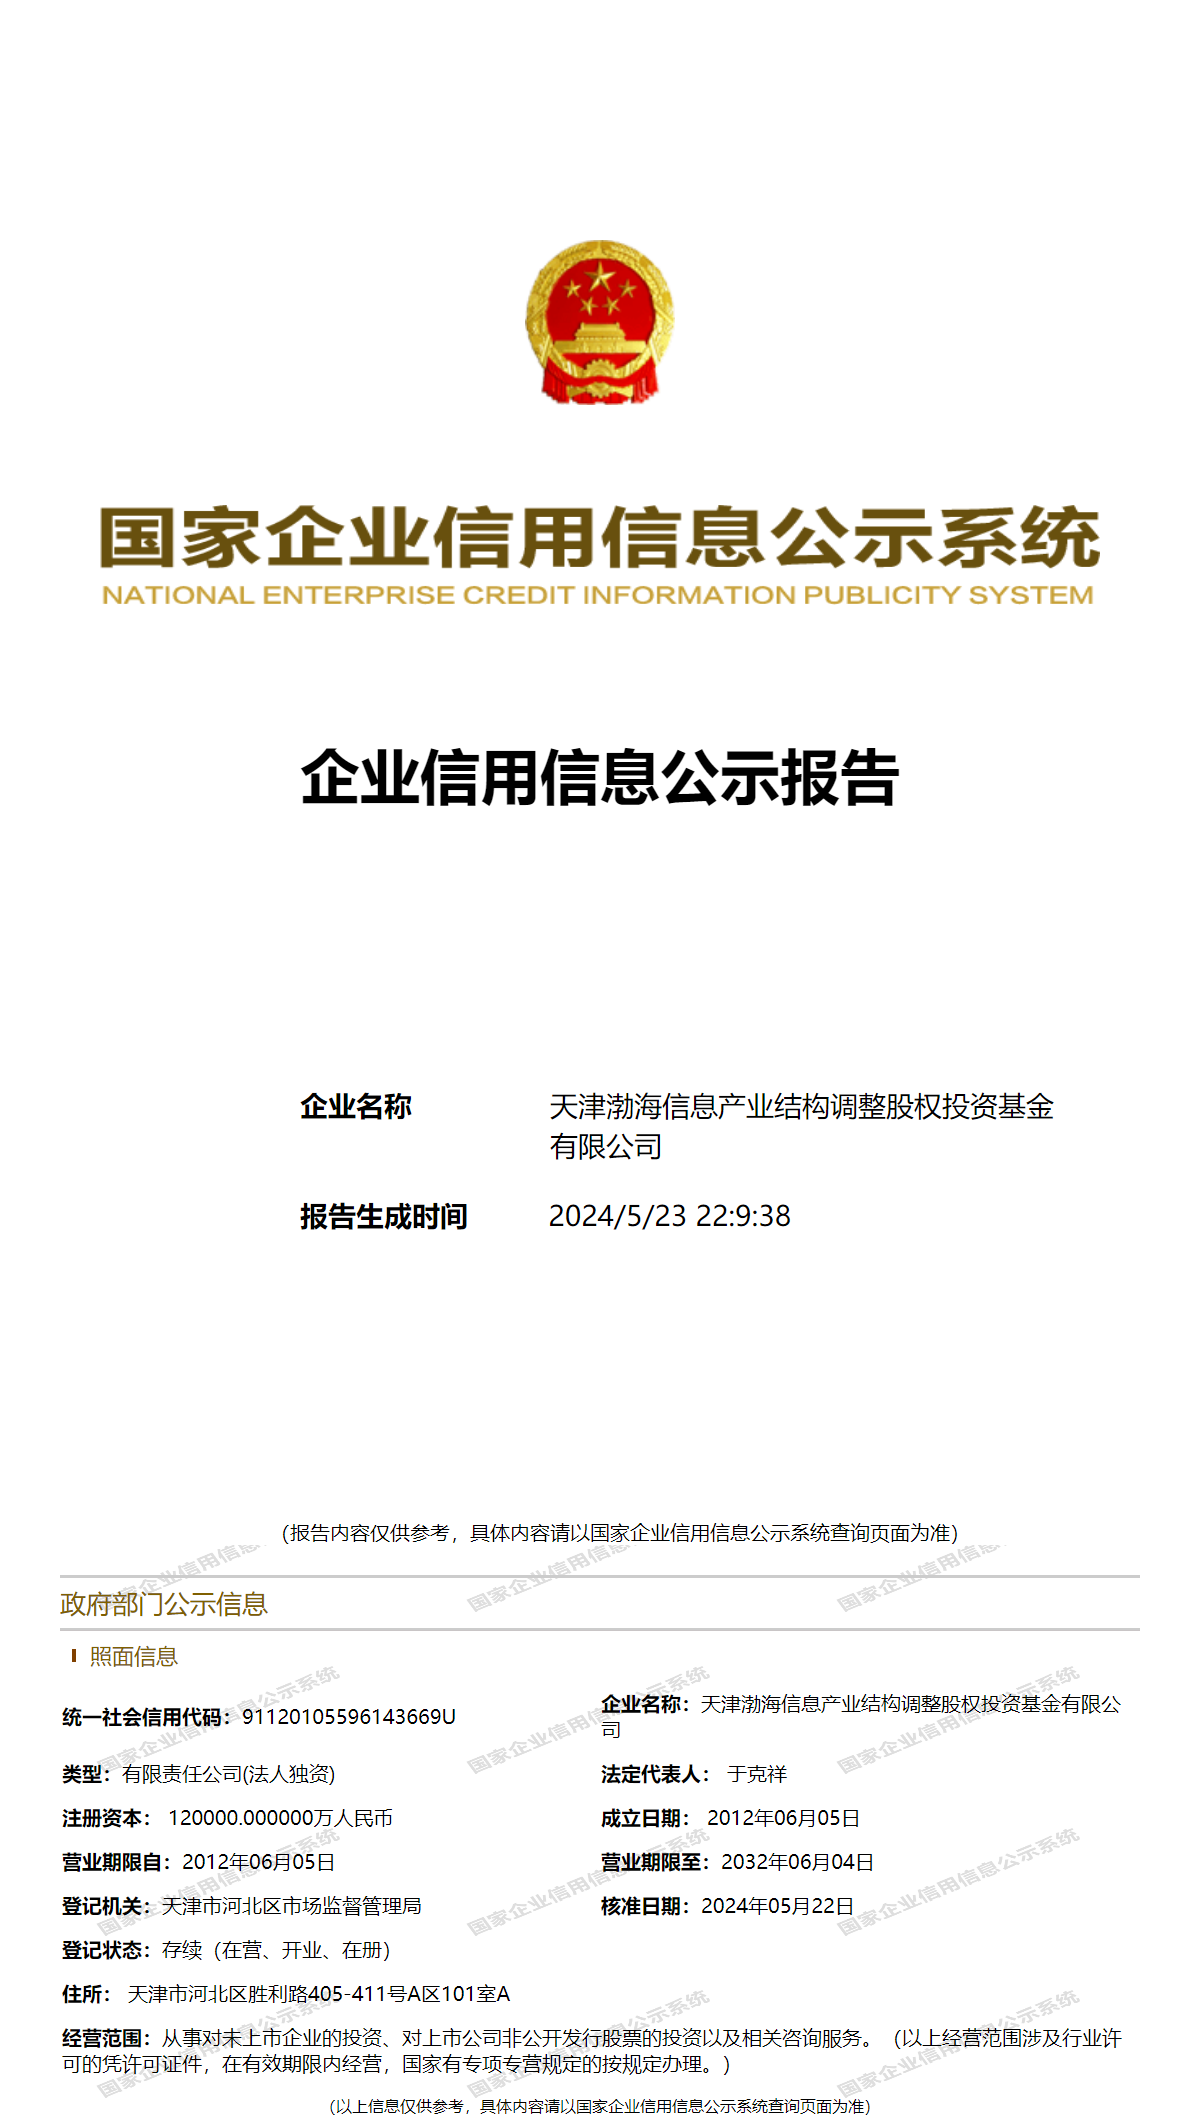 天津渤海信息产业结构调整股权投资基金有限公司